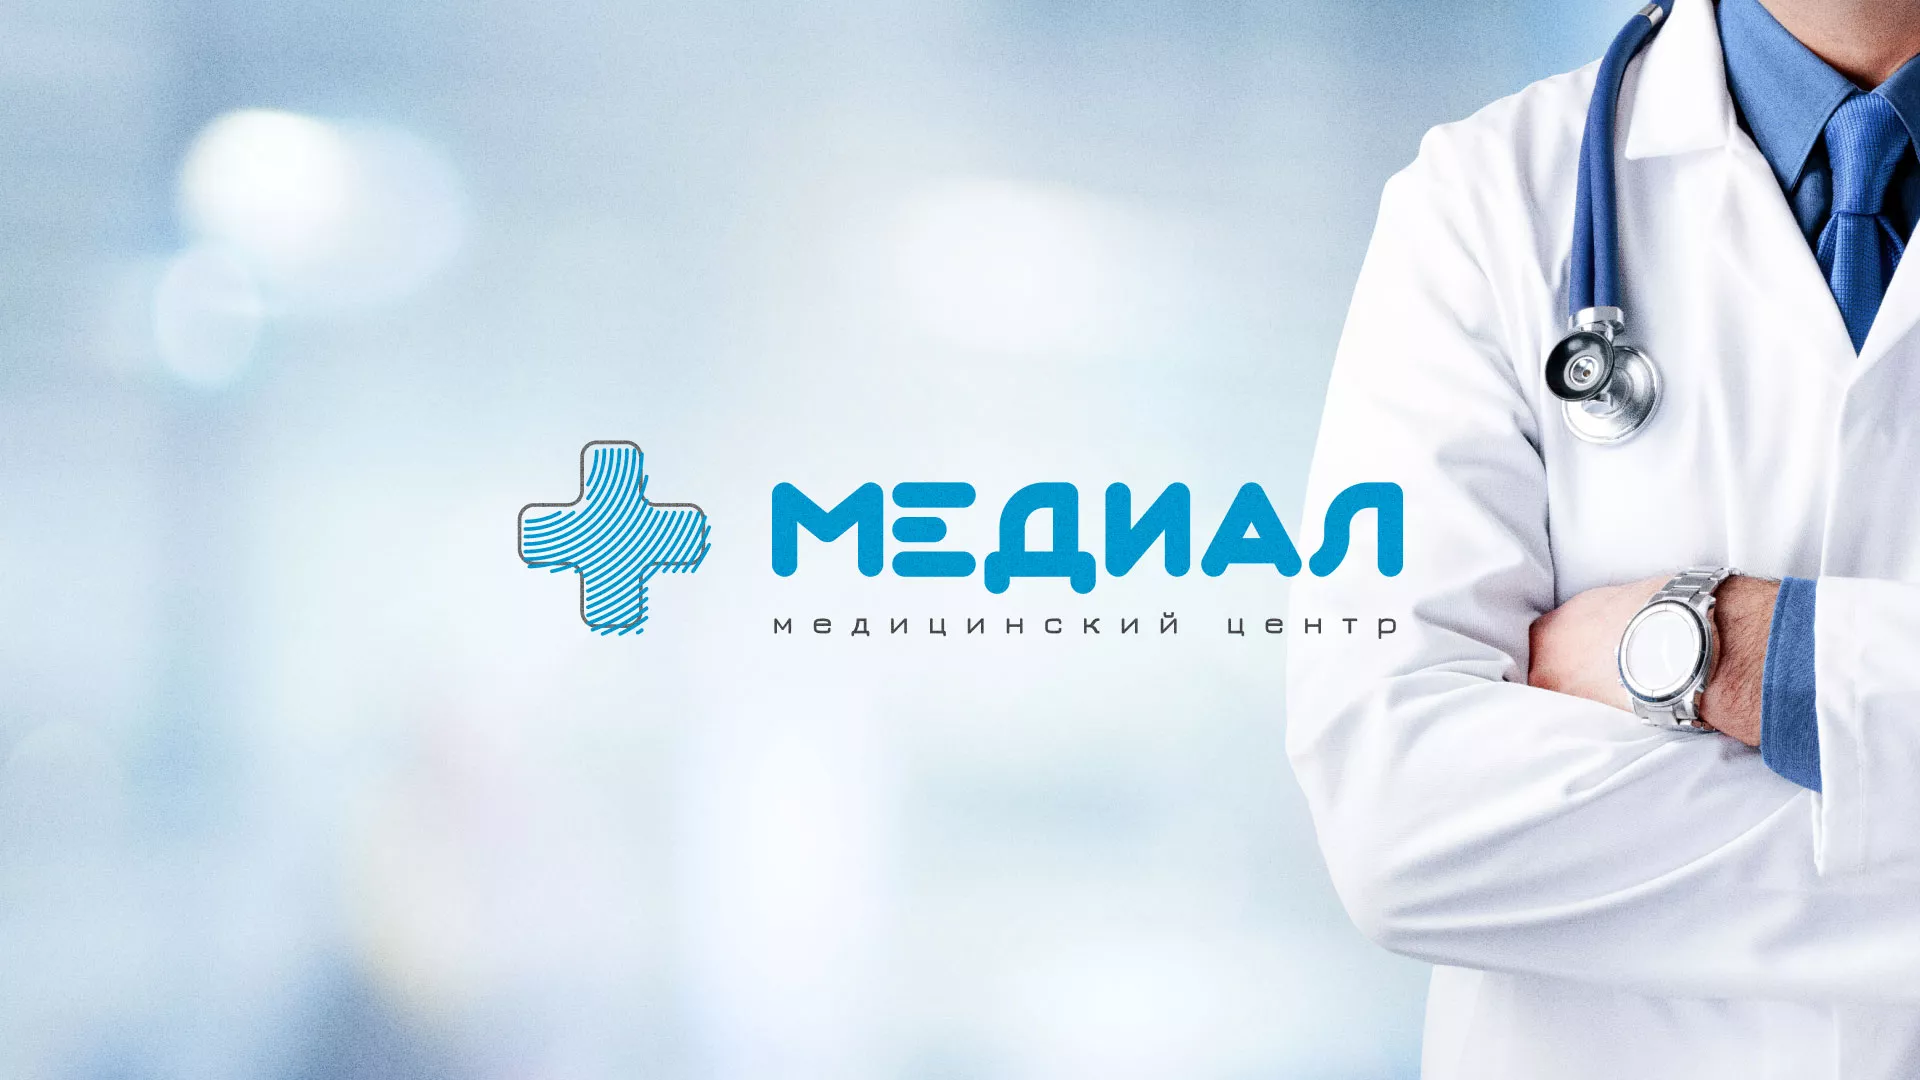 Создание сайта для медицинского центра «Медиал» в Усть-Джегуте